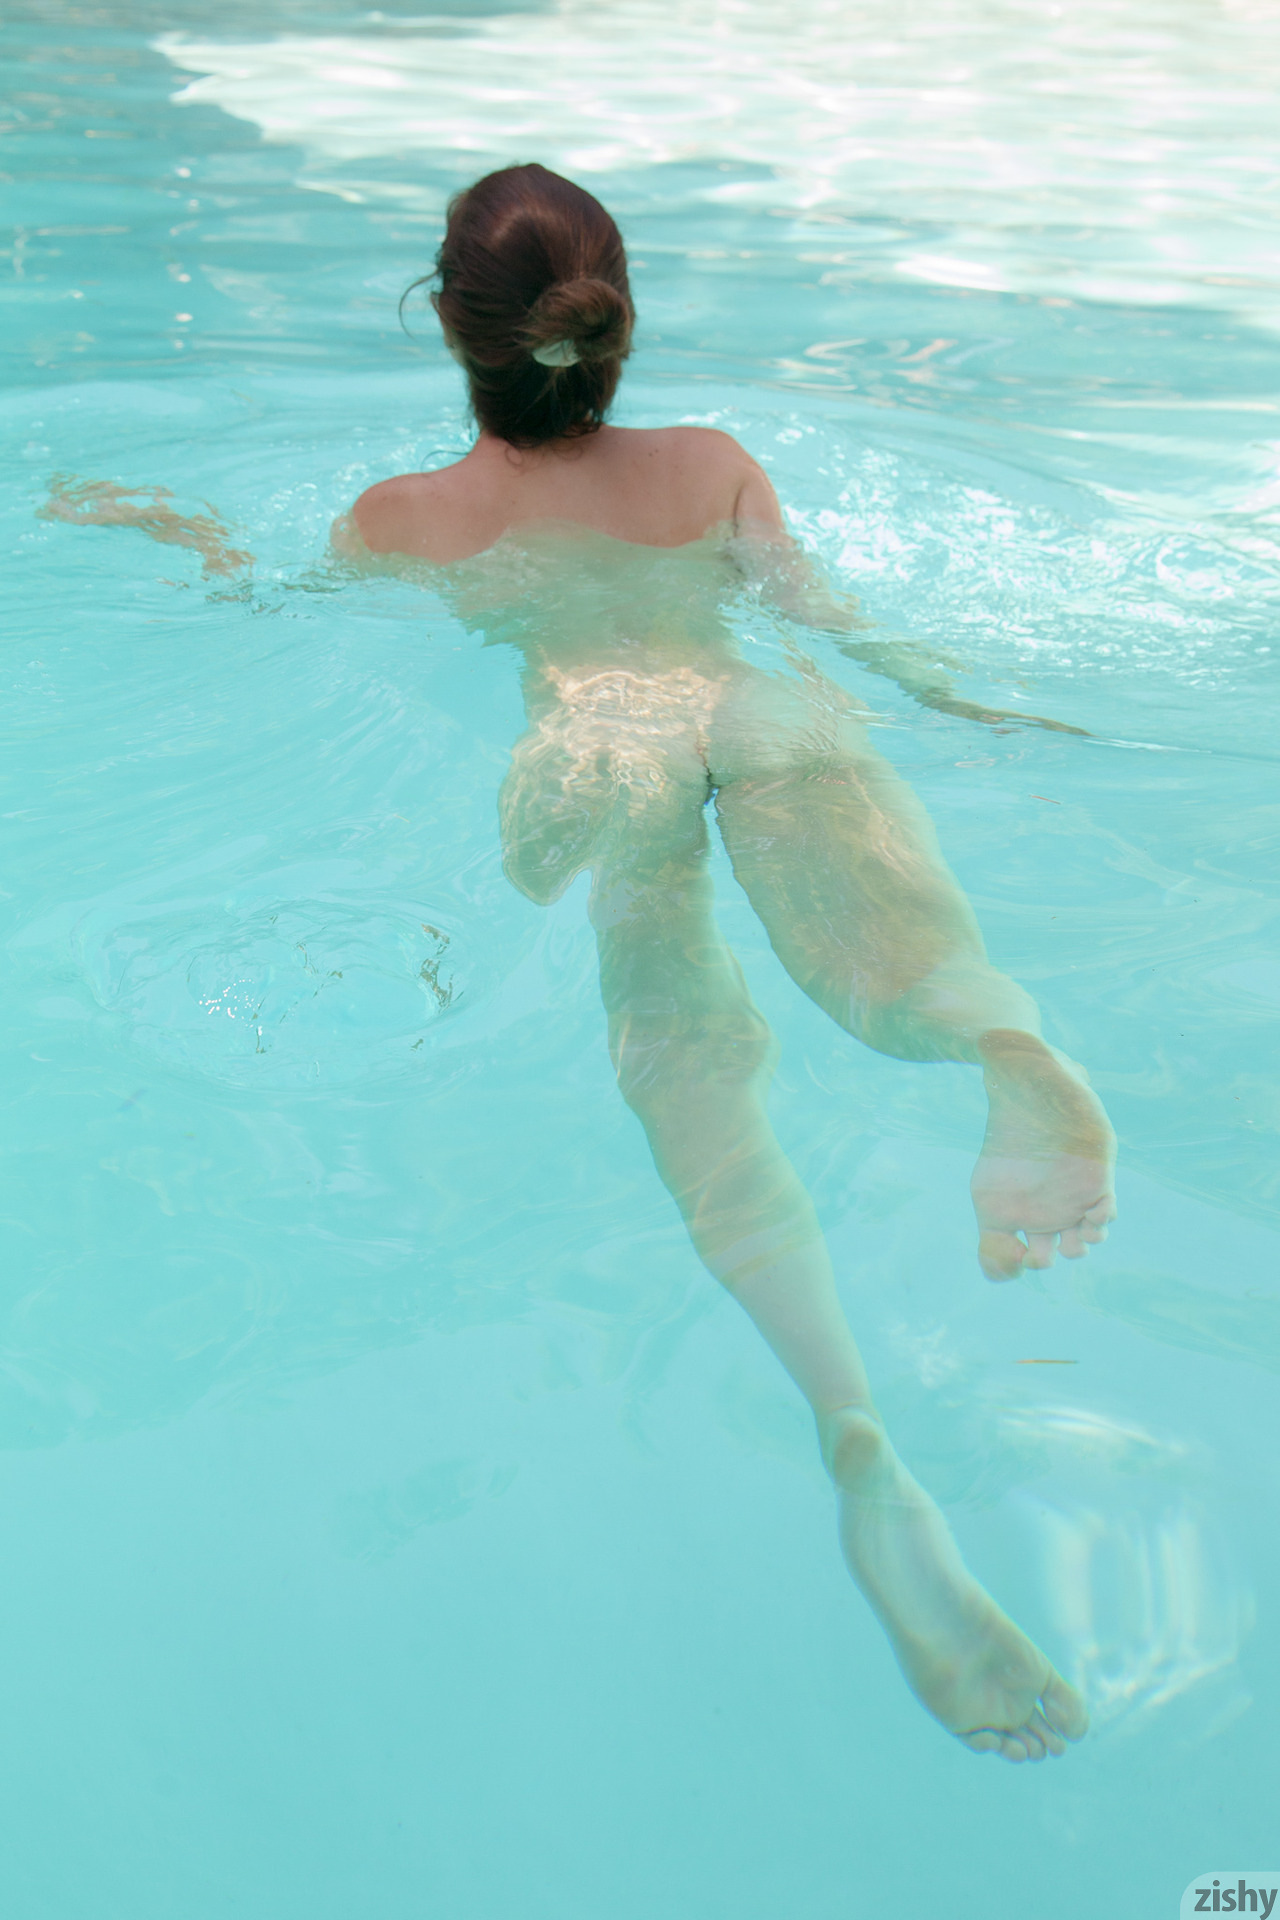 essie-halladay-boobs-pool-nude-sunglasses-zishy-21